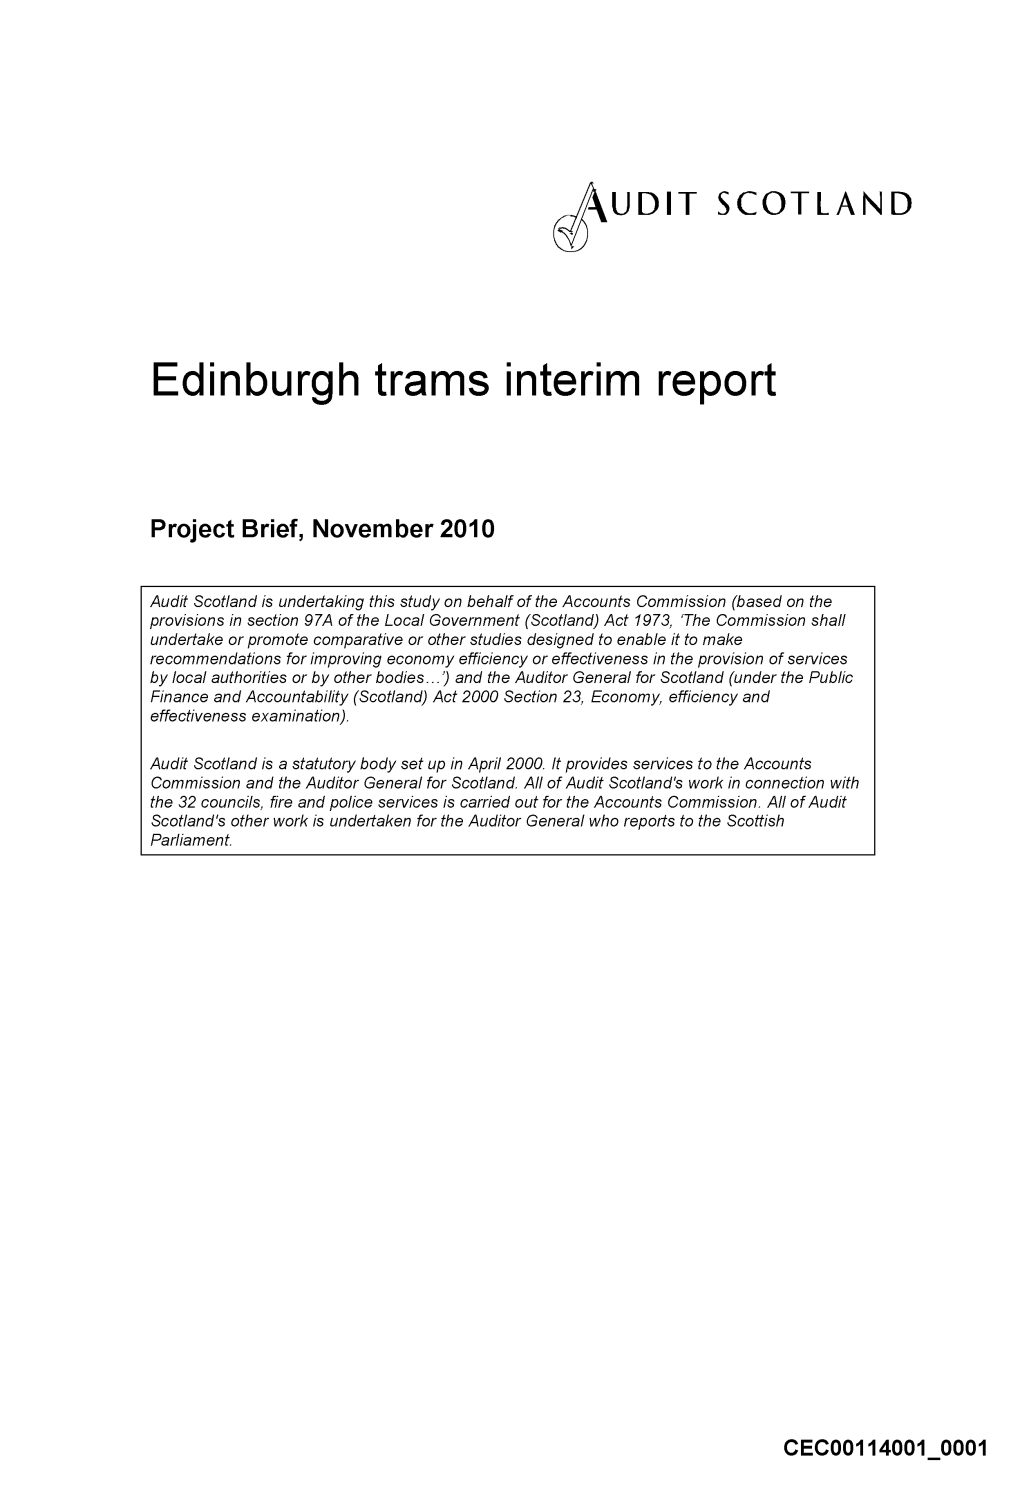 Edinburgh Trams Interim Report